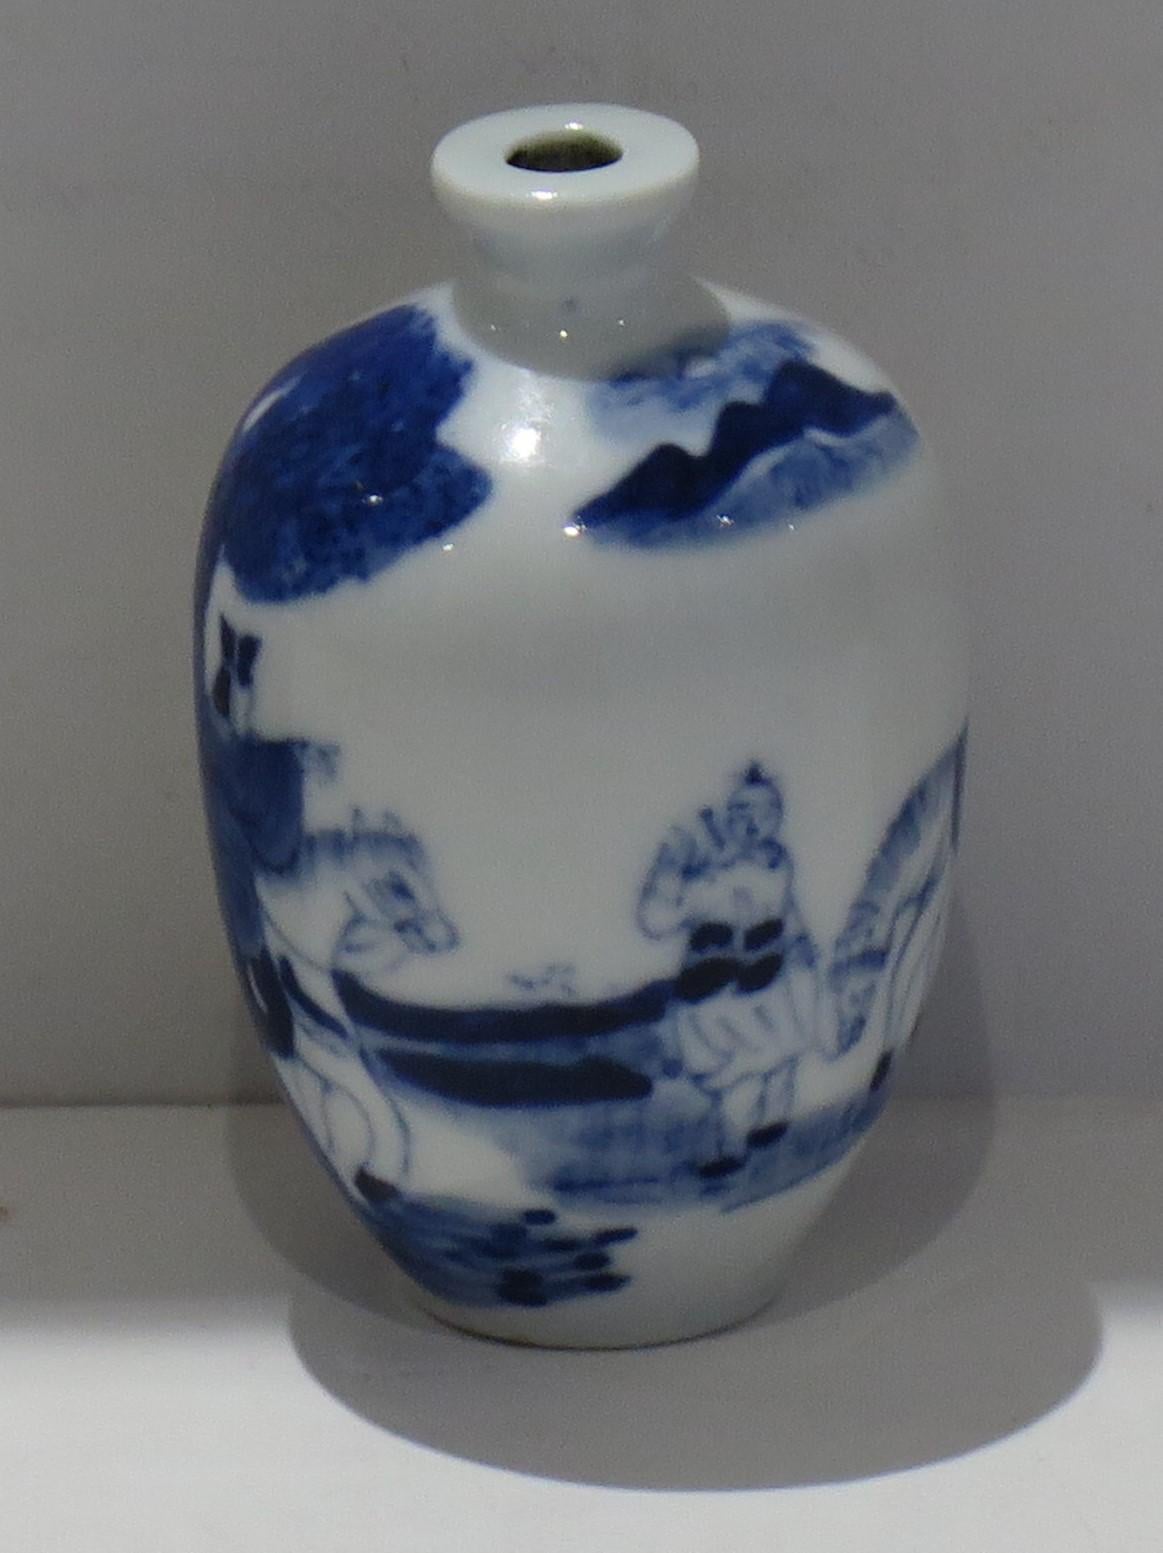 Il s'agit d'une tabatière chinoise de très bonne qualité, réalisée en porcelaine et finement peinte à la main en bleu cobalt, datant du milieu du XIXe siècle, Qing, période Xianfeng, vers les années 1850.

Cette pièce est bien empotée, avec une